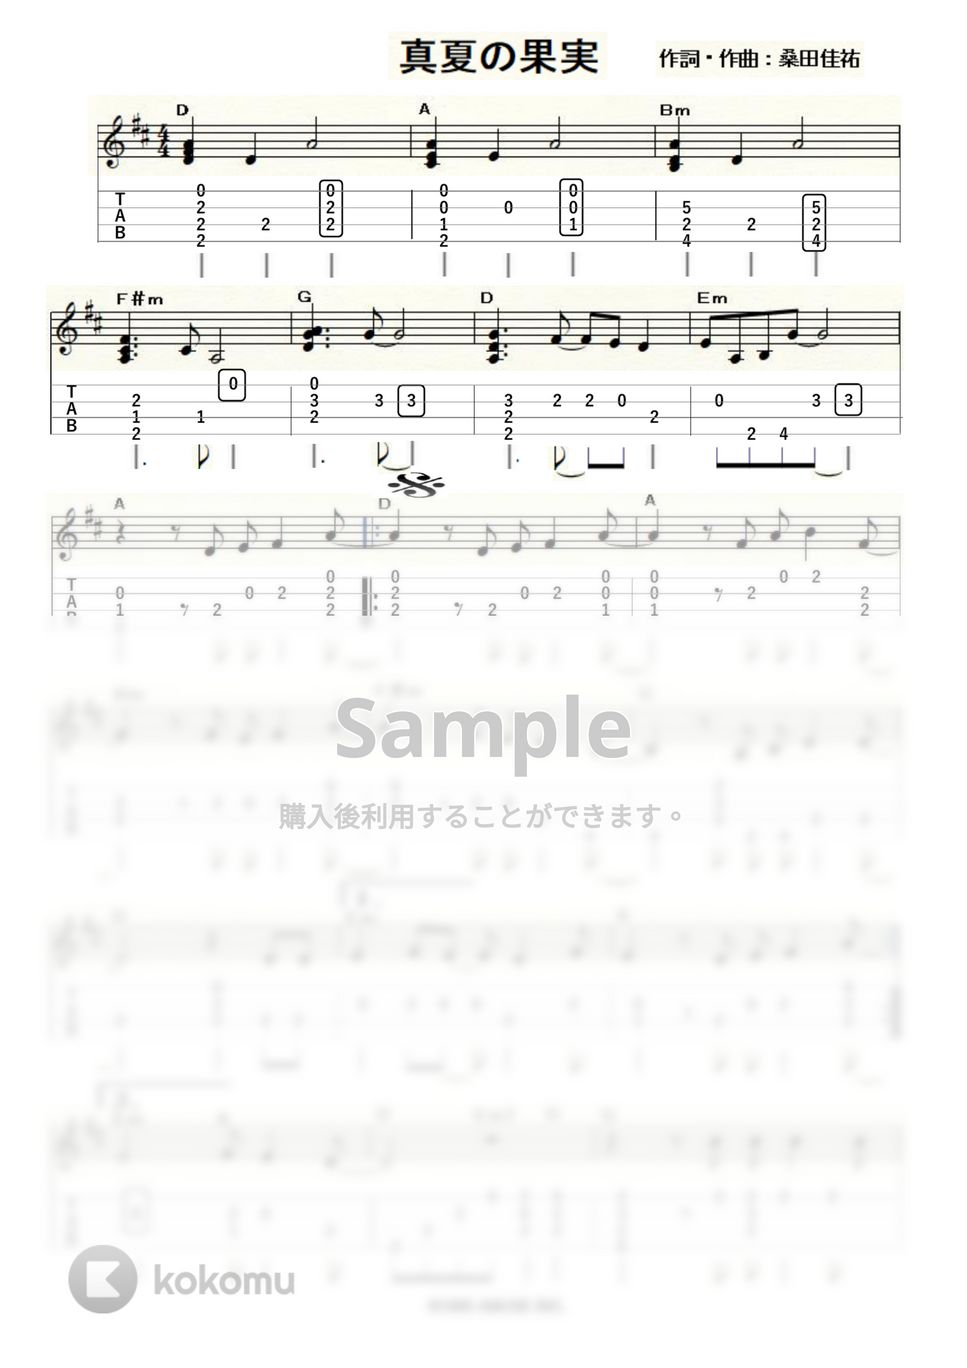 サザンオールスターズ - 真夏の果実 (ｳｸﾚﾚｿﾛ / Low-G / 上級) by ukulelepapa